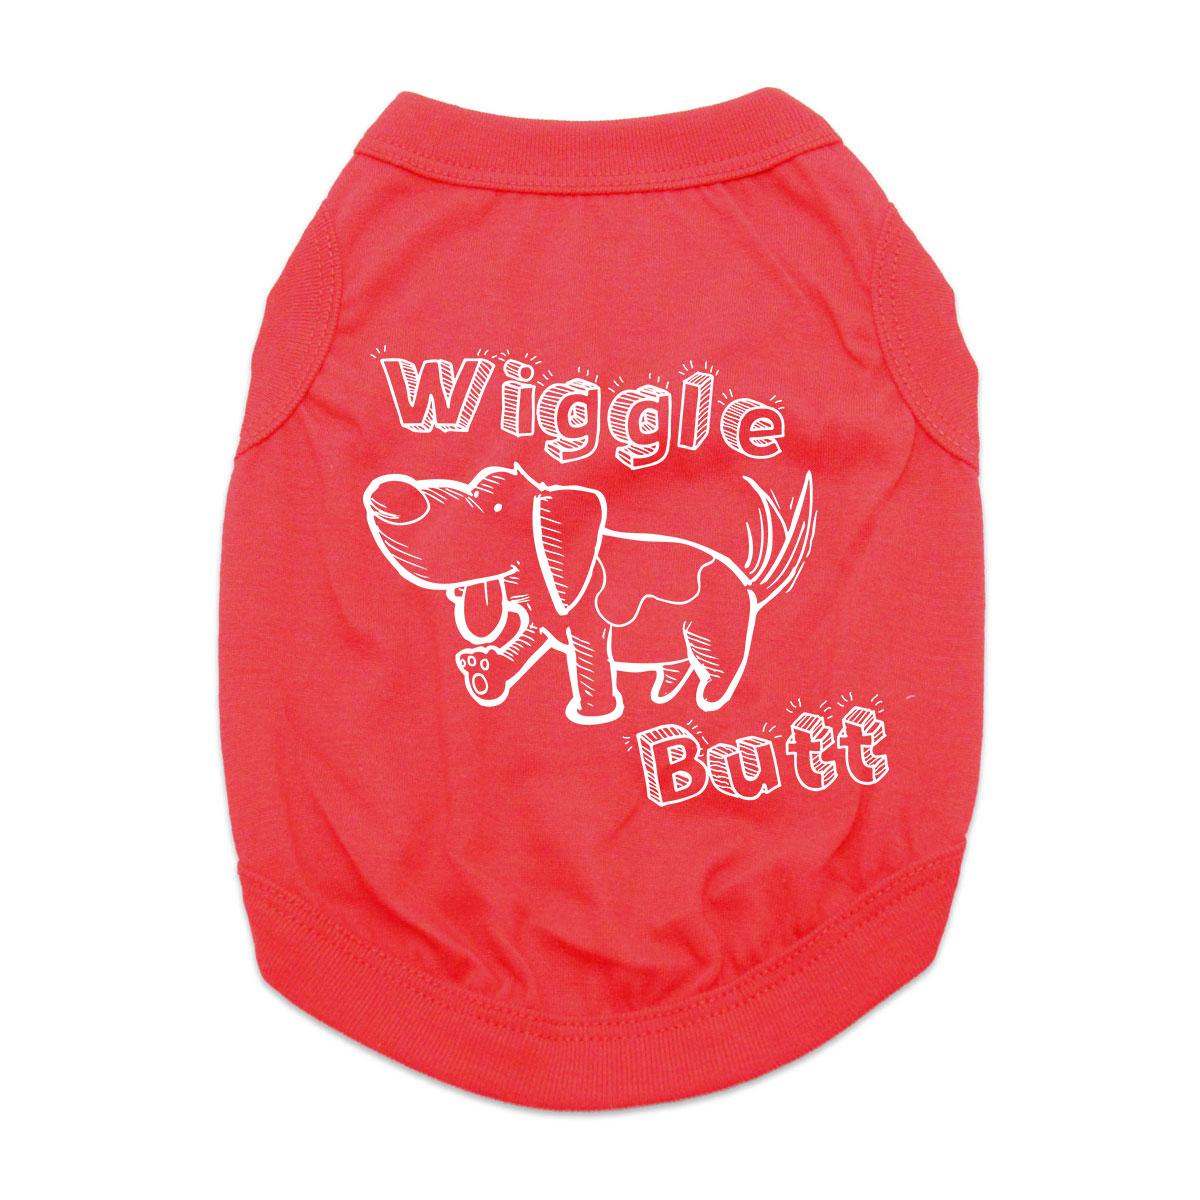 Wiggle Butt Dog Shirt - Red